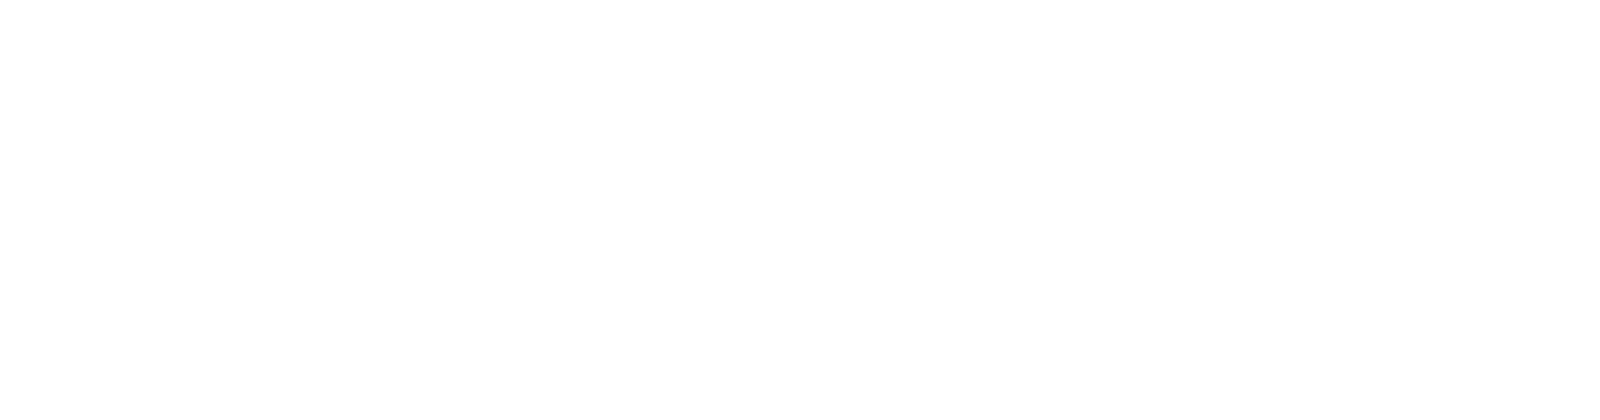 Dunton Environmental